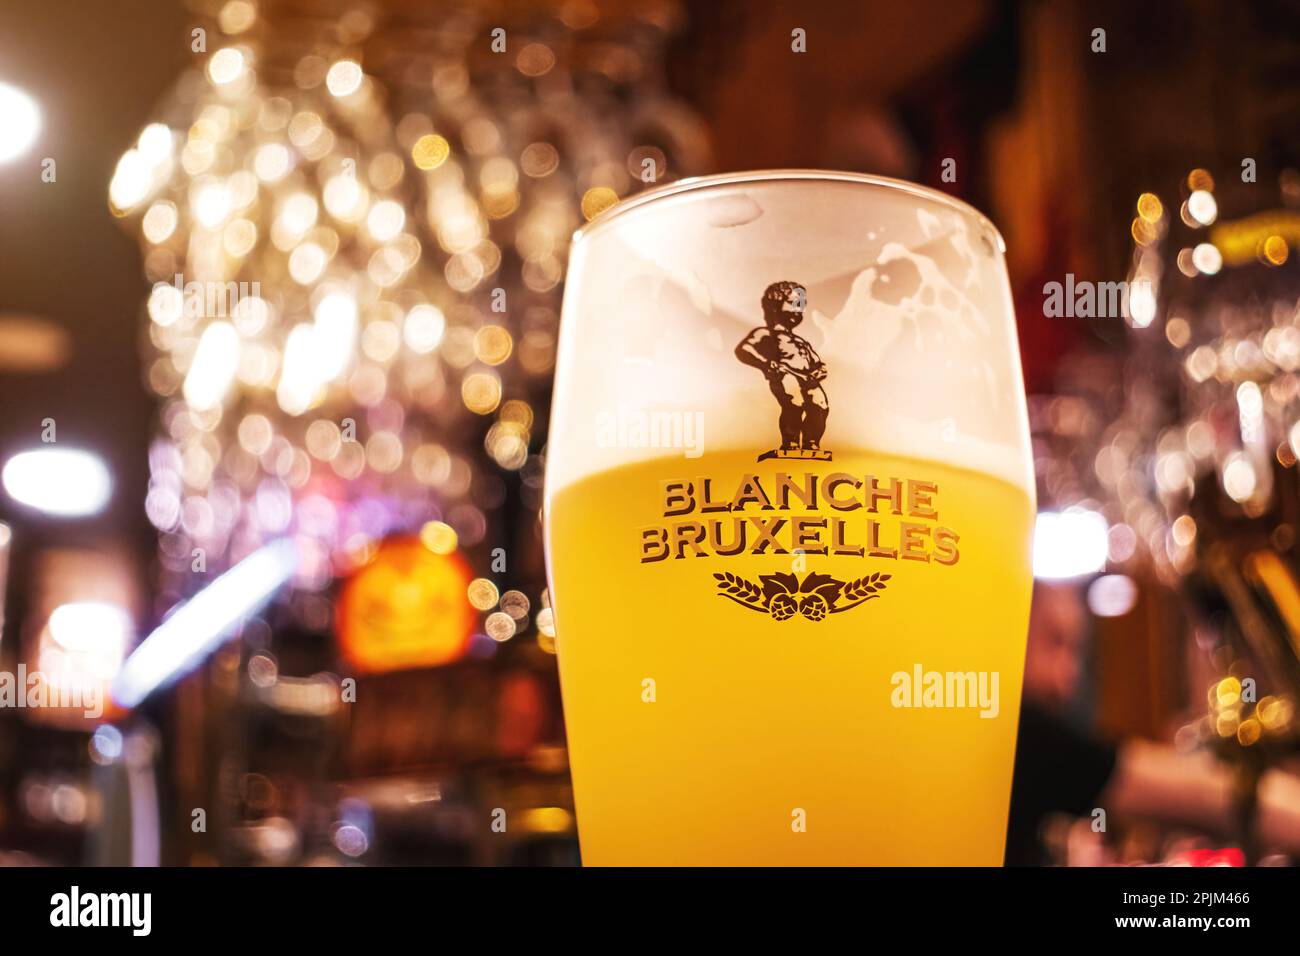 Vaso de cerveza Blanche De Bruxelles con fondo Bar. Enfoque suave. Cerveza blanca belga. Foto de stock